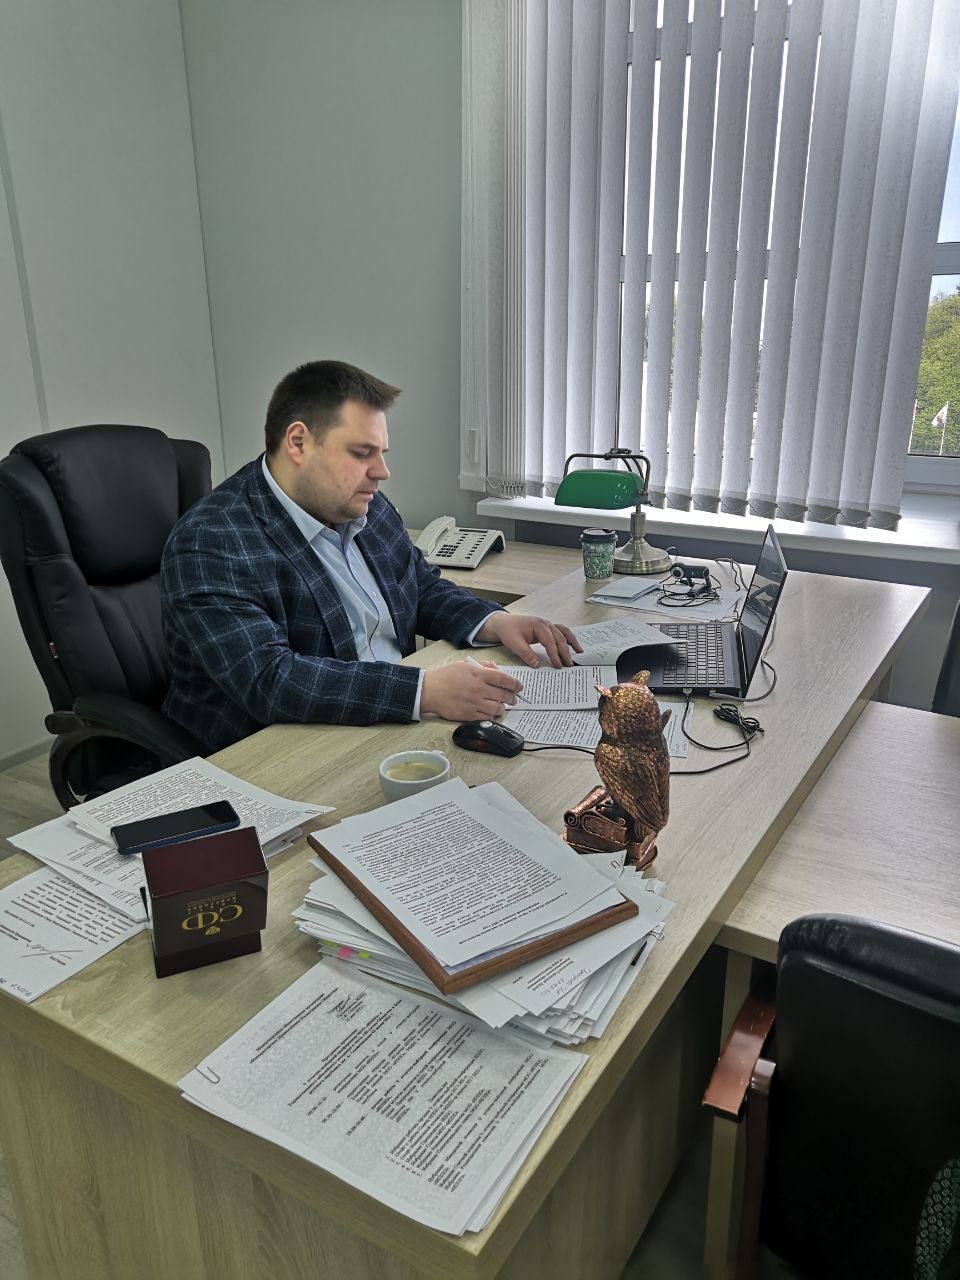 Бесплатная юрпомощь высококвалифицированных адвокатов: опыт Ульяновской области